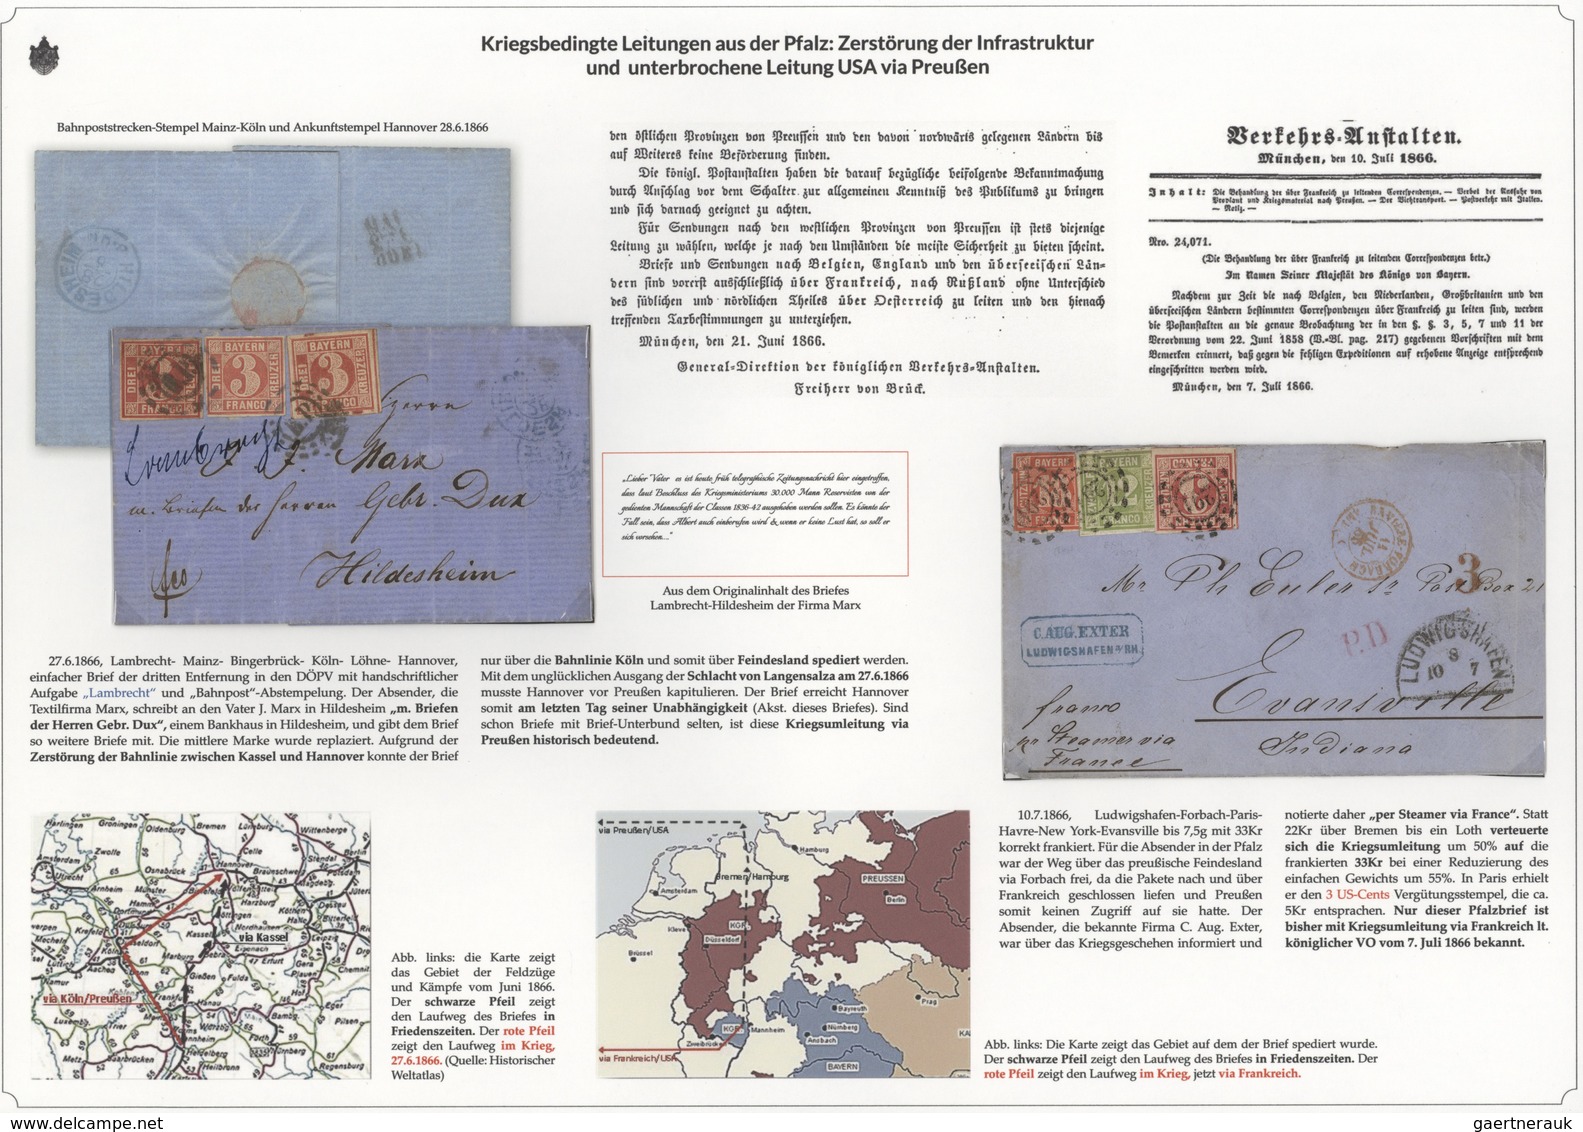 01142 Bayern - Marken und Briefe: 1806/1875 EINMALIGE AUSSTELLUNGS-SAMMLUNG: BAYERISCHE BRIEFPOST IM SPIEG